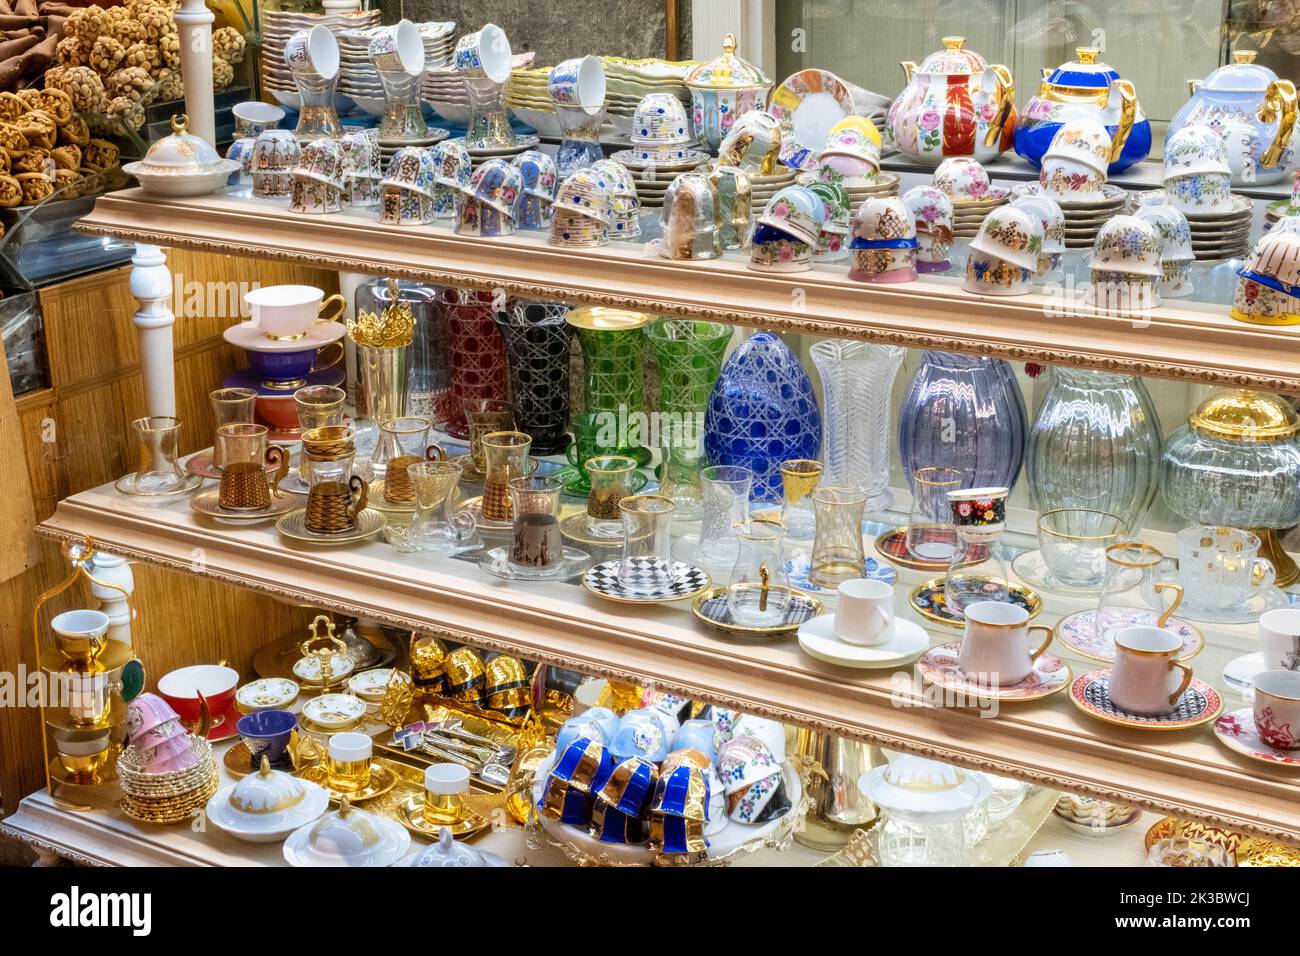 Bunte, traditionelle und handgemachte Glaswaren-Aufnahmen aus Souvenirs vom Basar-Stand von Mısır, Einkaufen in einem Basar, Marktstände in den Arkaden, Tee- und Kaffeetassen Stockfoto